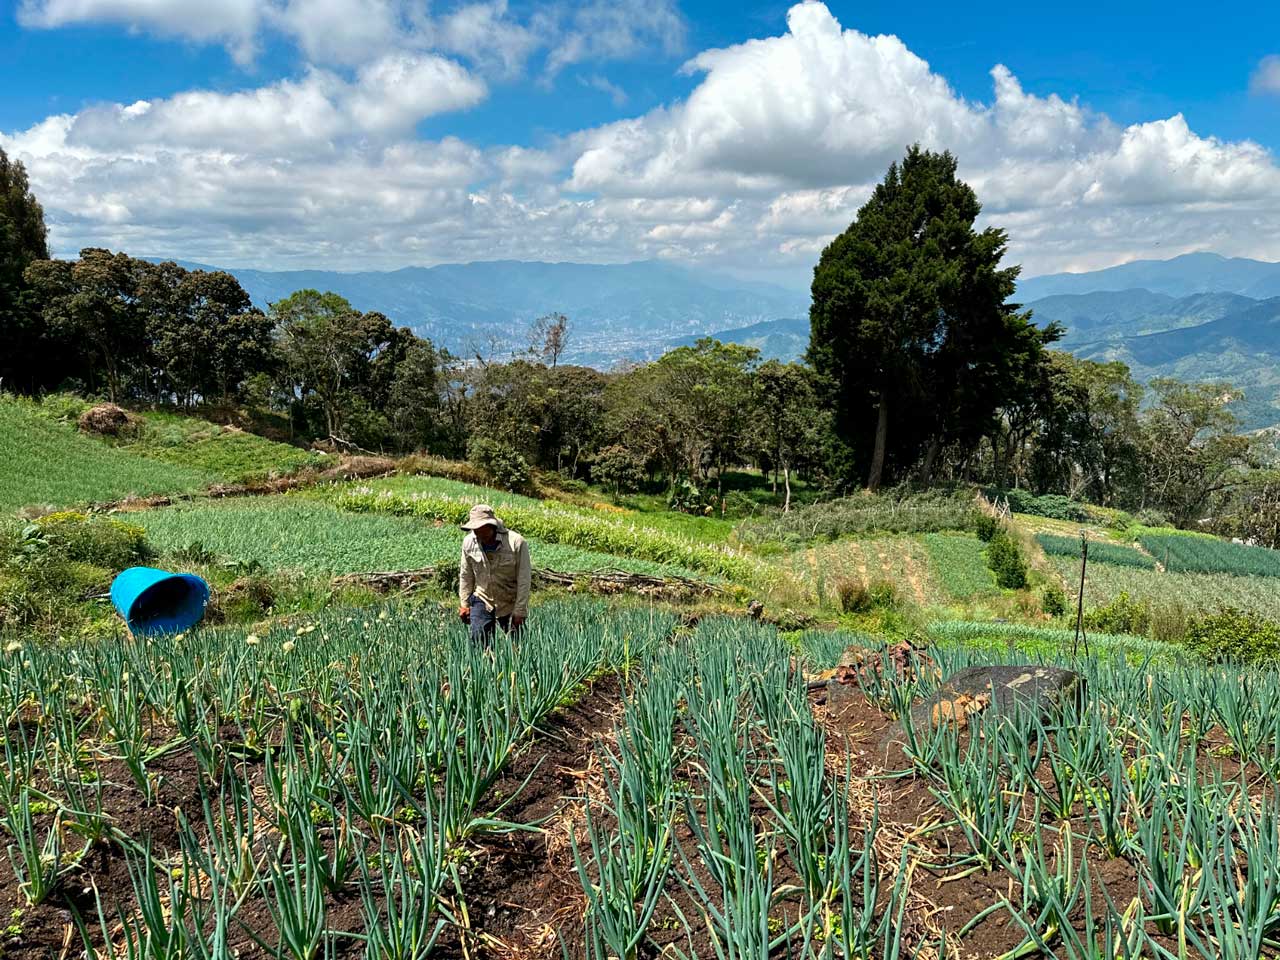 101 productores rurales de Medellín se beneficiarán con la instalación de infraestructura productiva agrícola